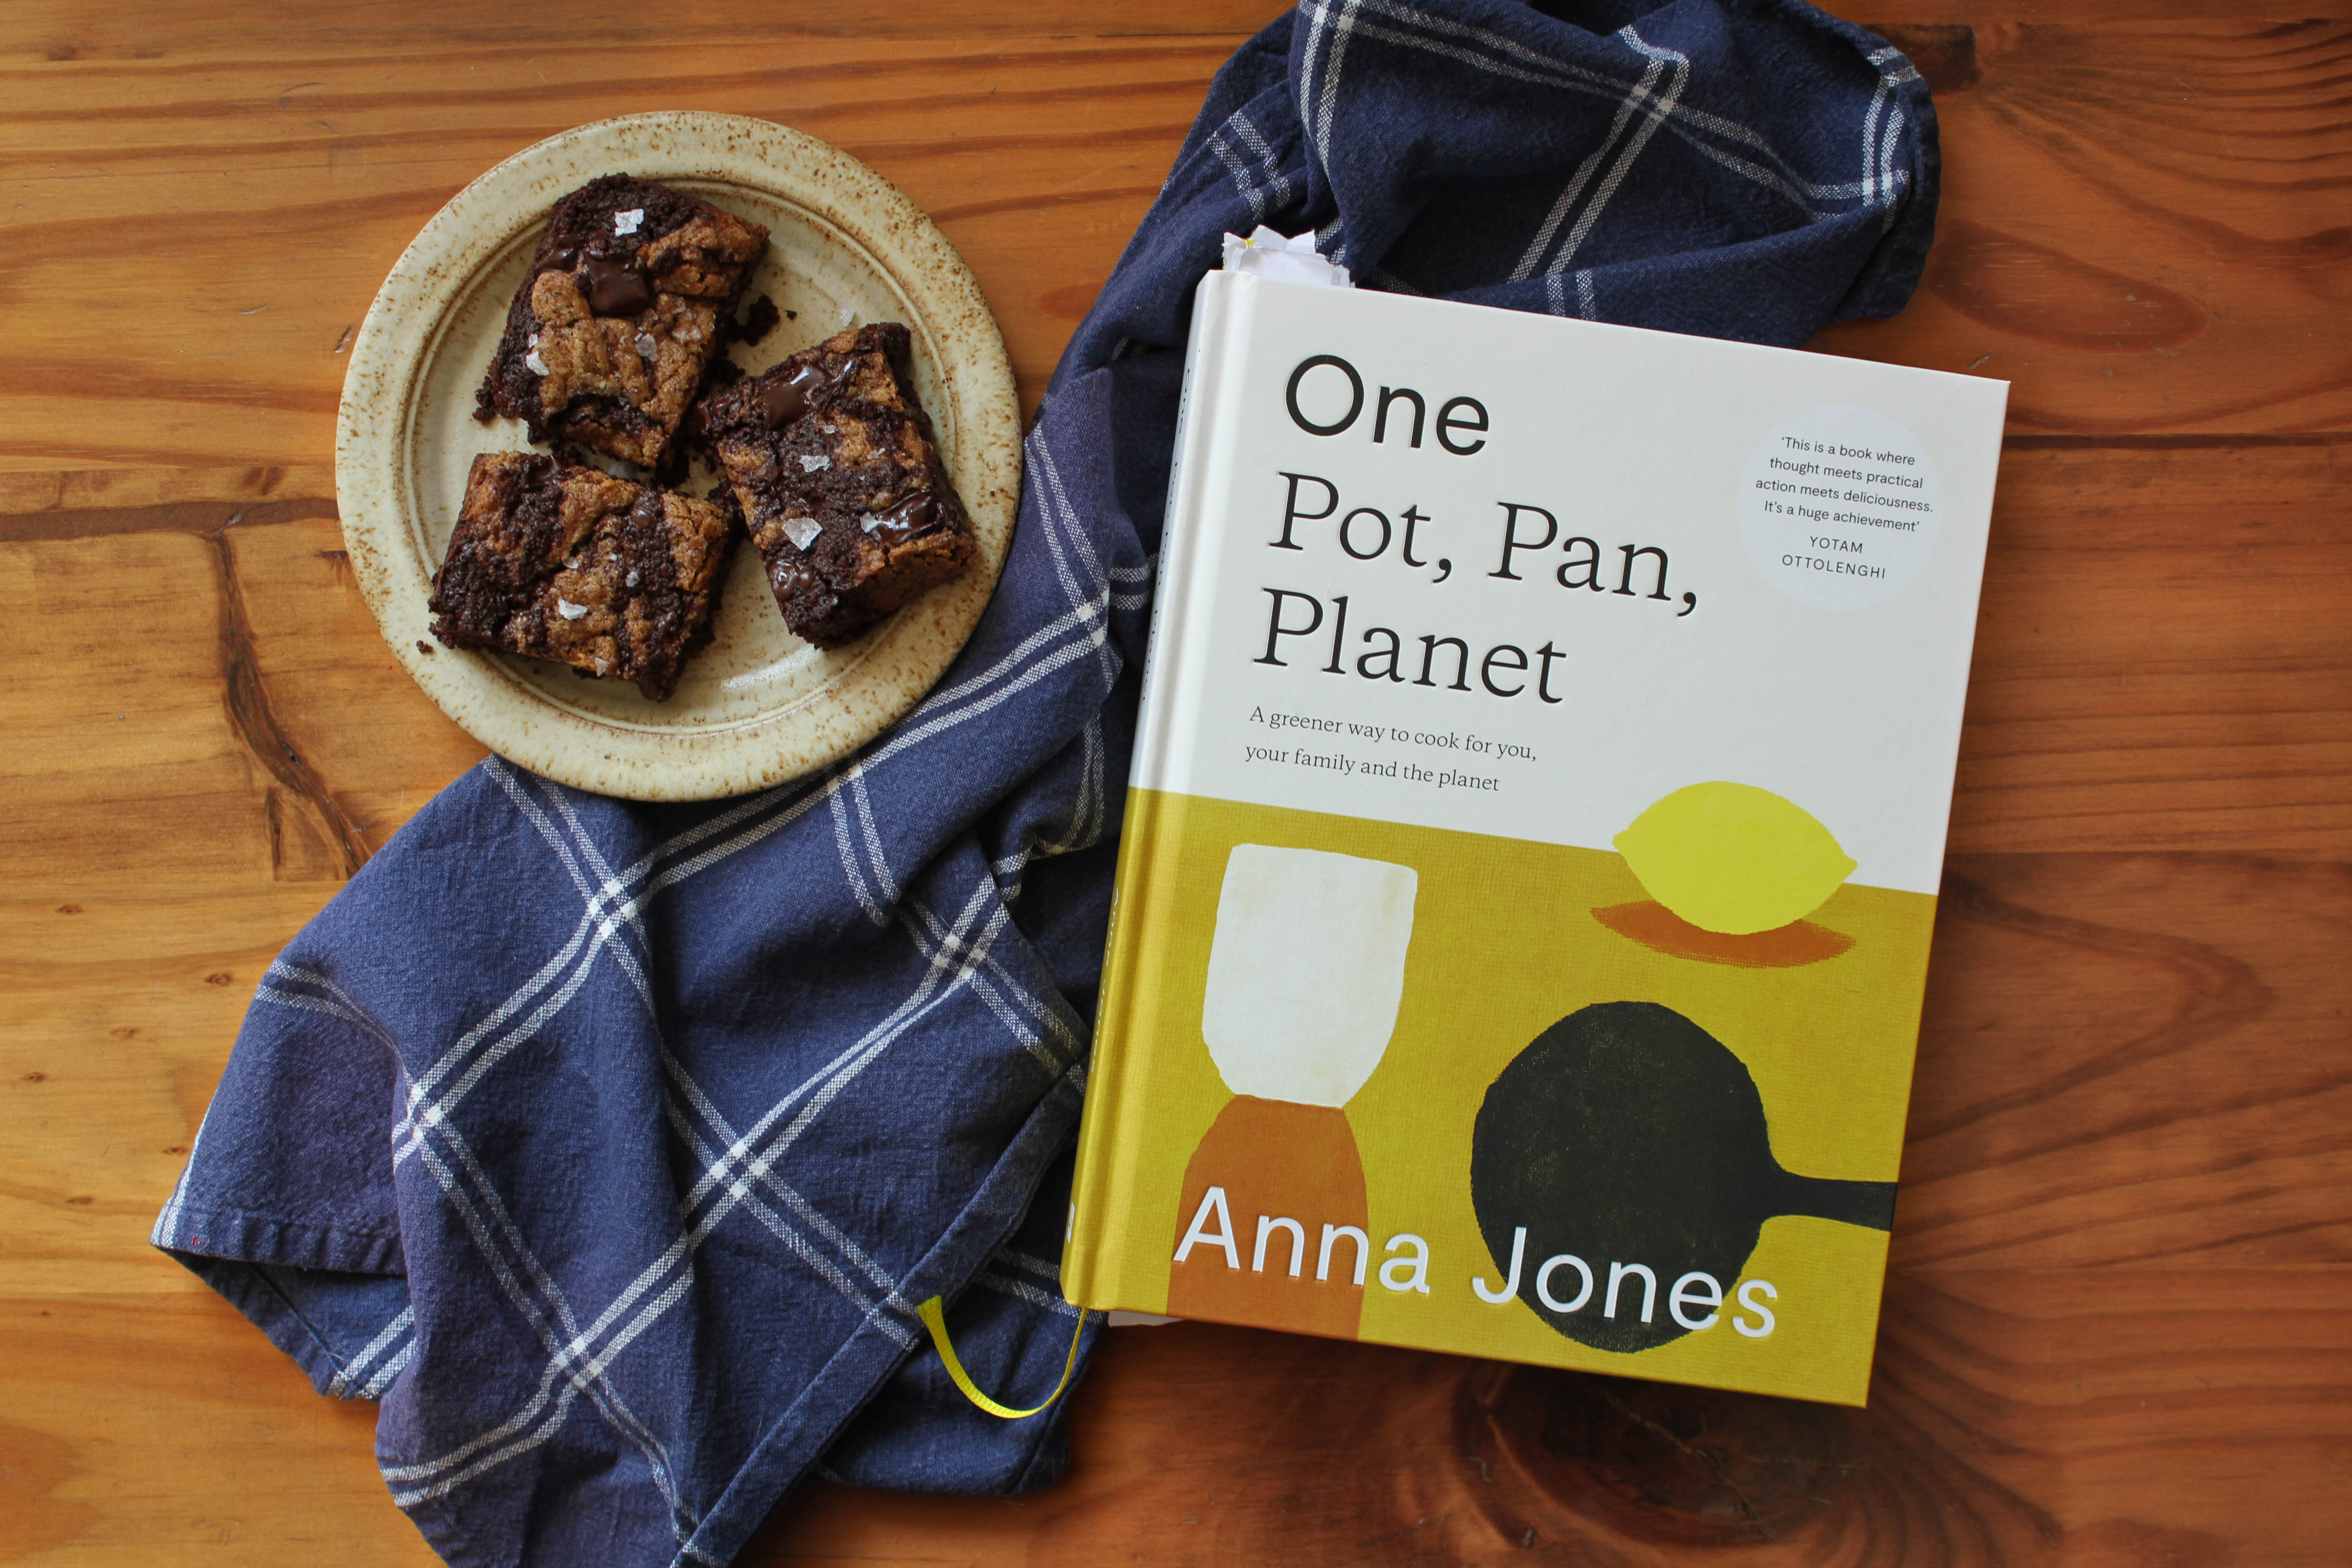 One Pot, Pan, Planet